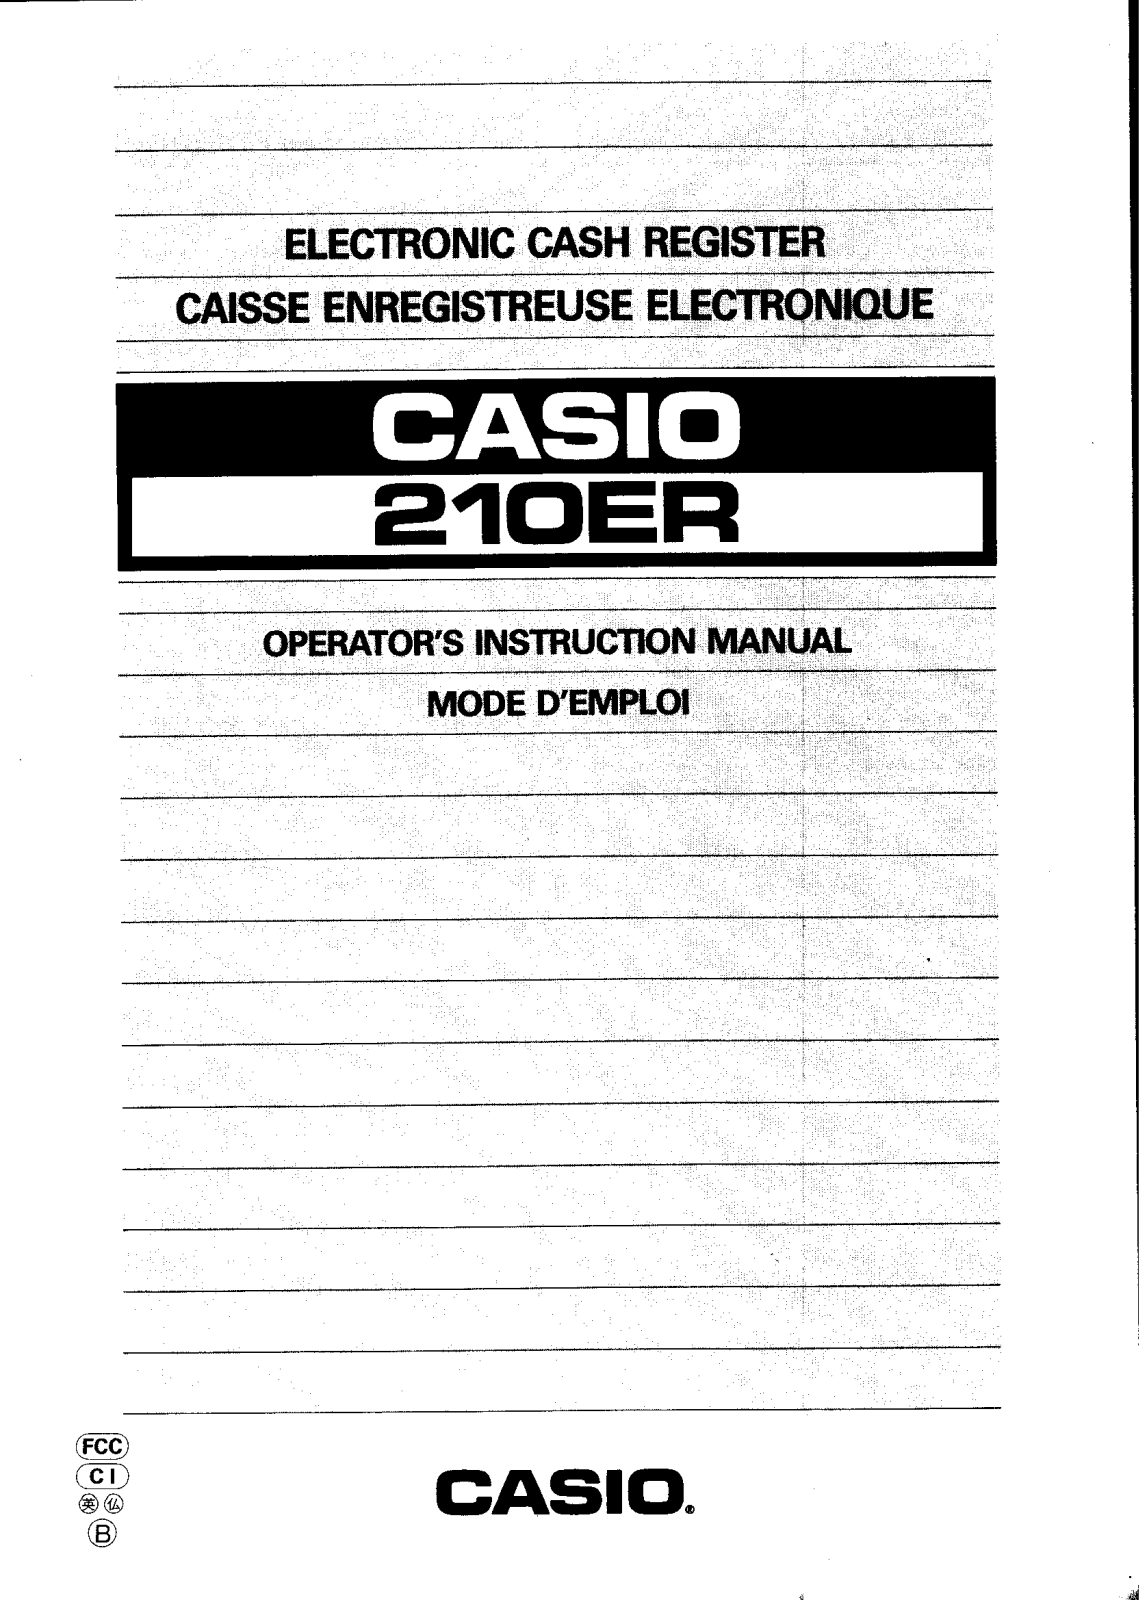 Casio 210ER Owner's Manual